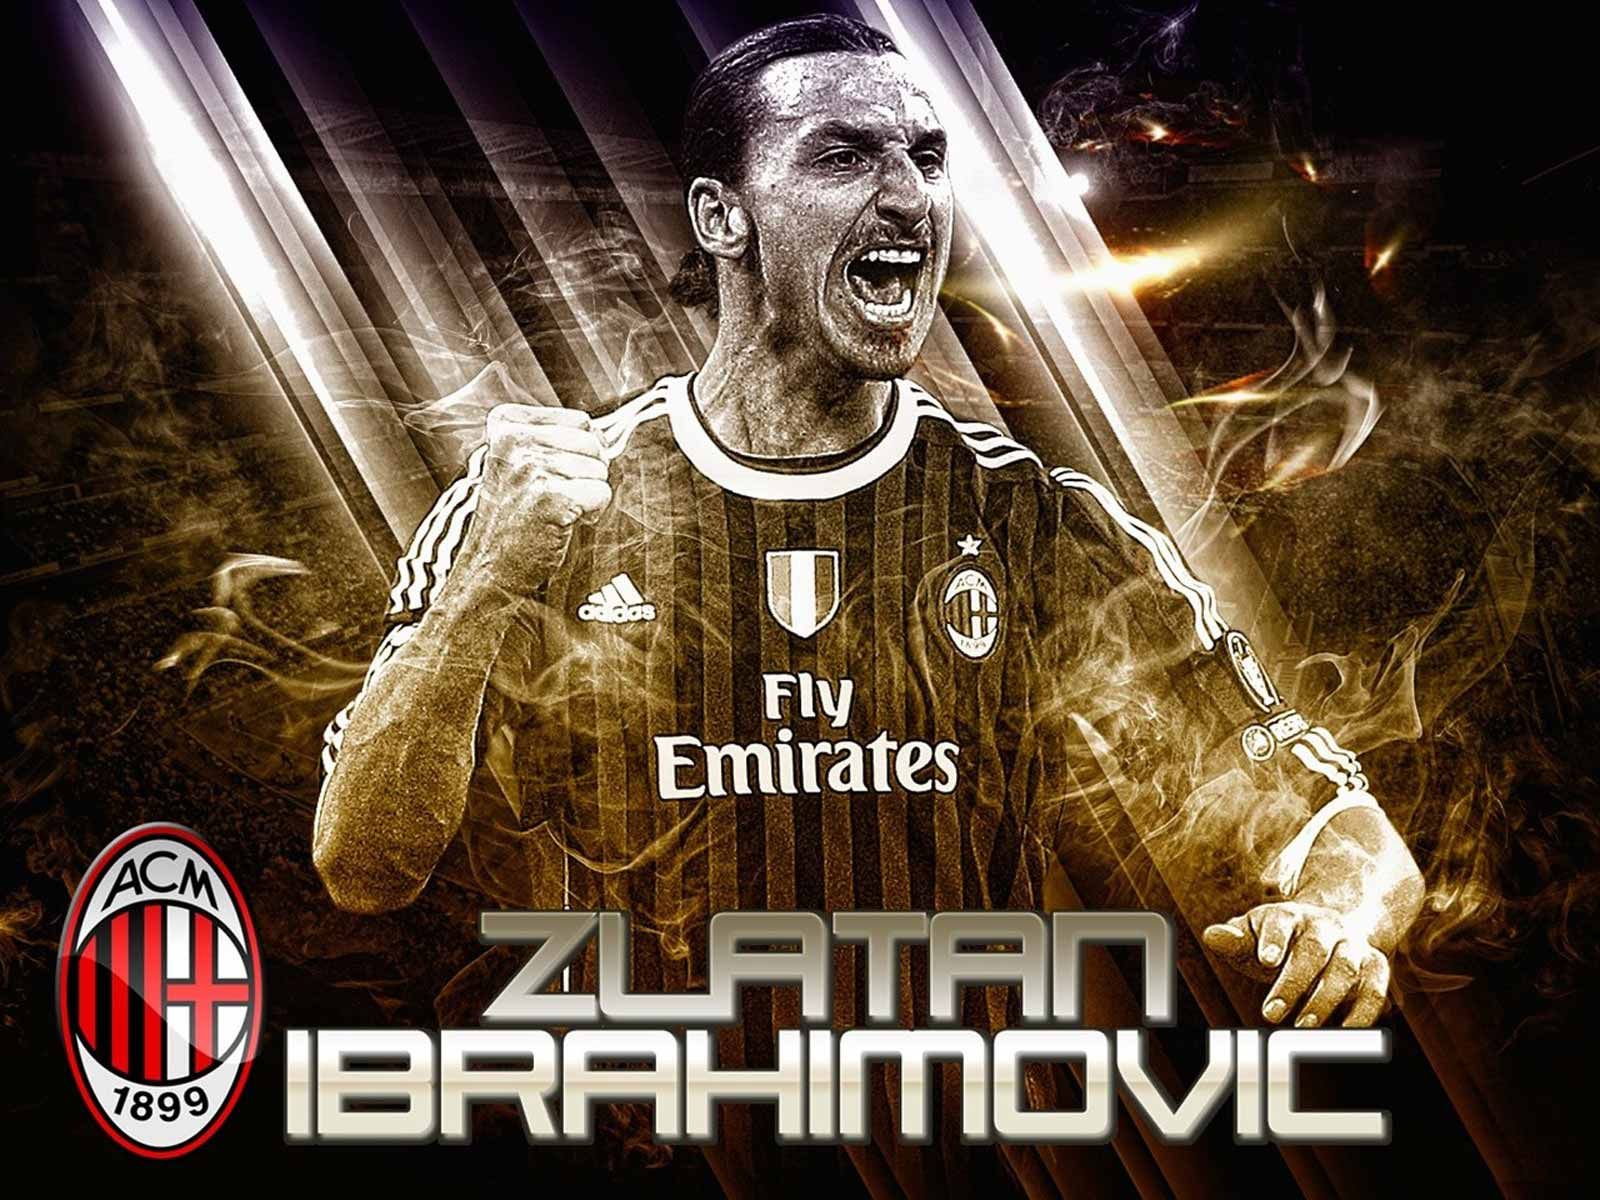 Zlatan Ibrahimovic Wallpaper HD .com